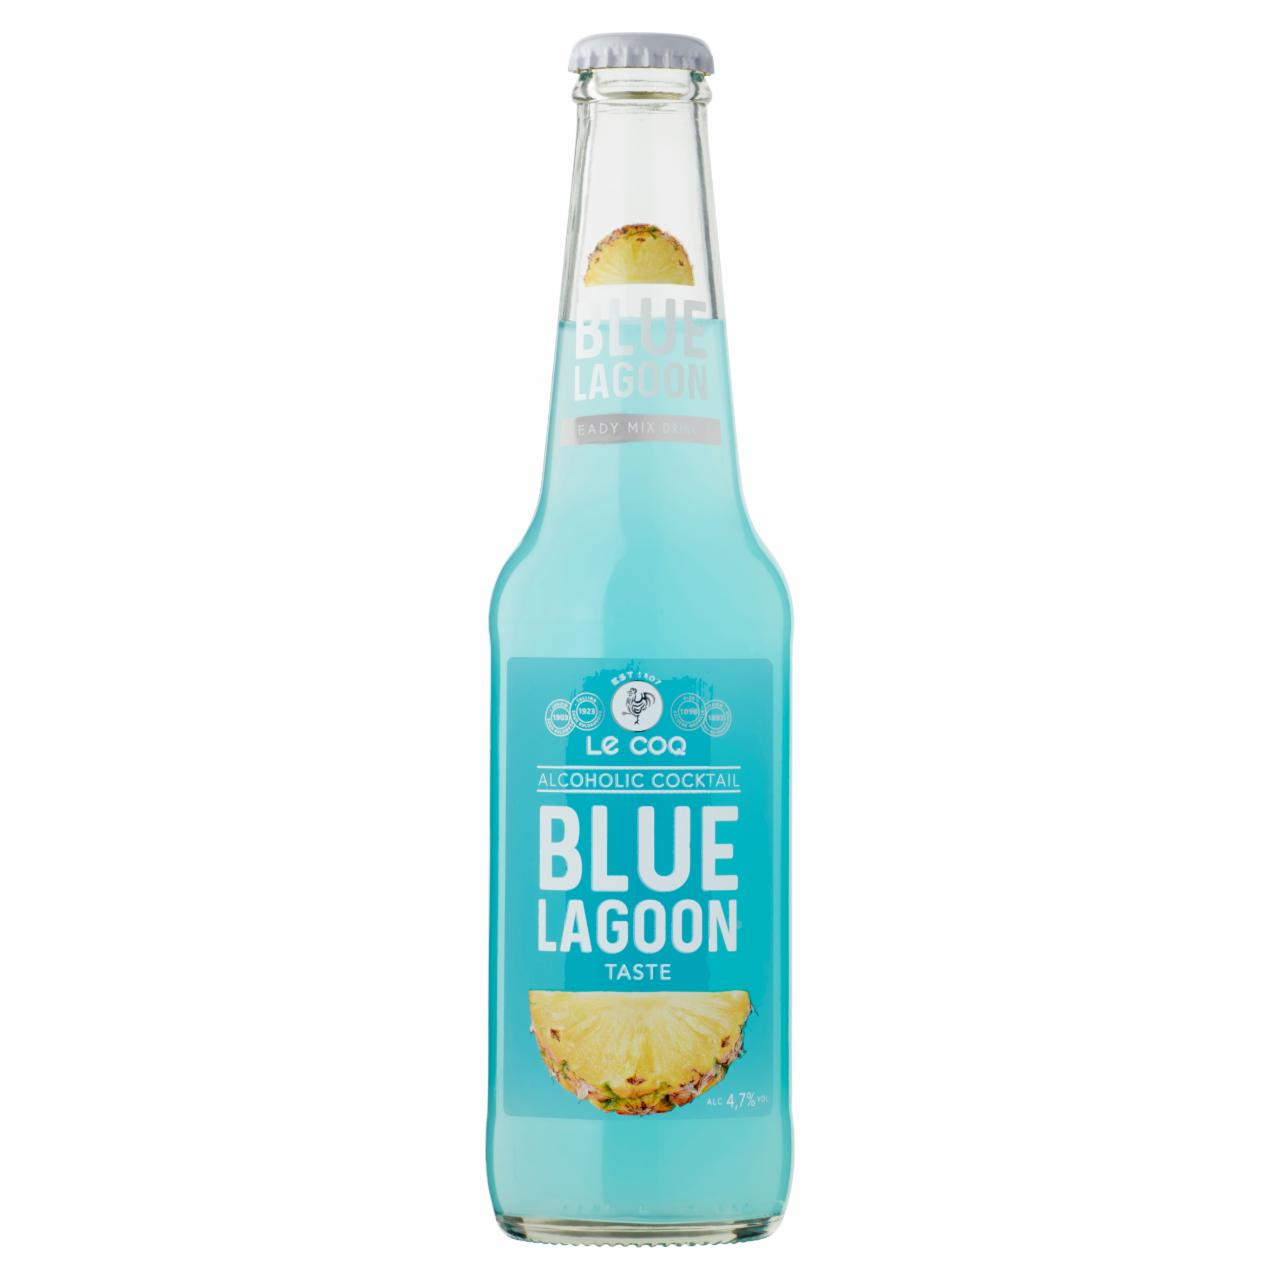 Képek - Le Coq Blue Lagoon kókusz-ananász-curaçao ízű szénsavas alkoholos ital 4,7% 0,33 l